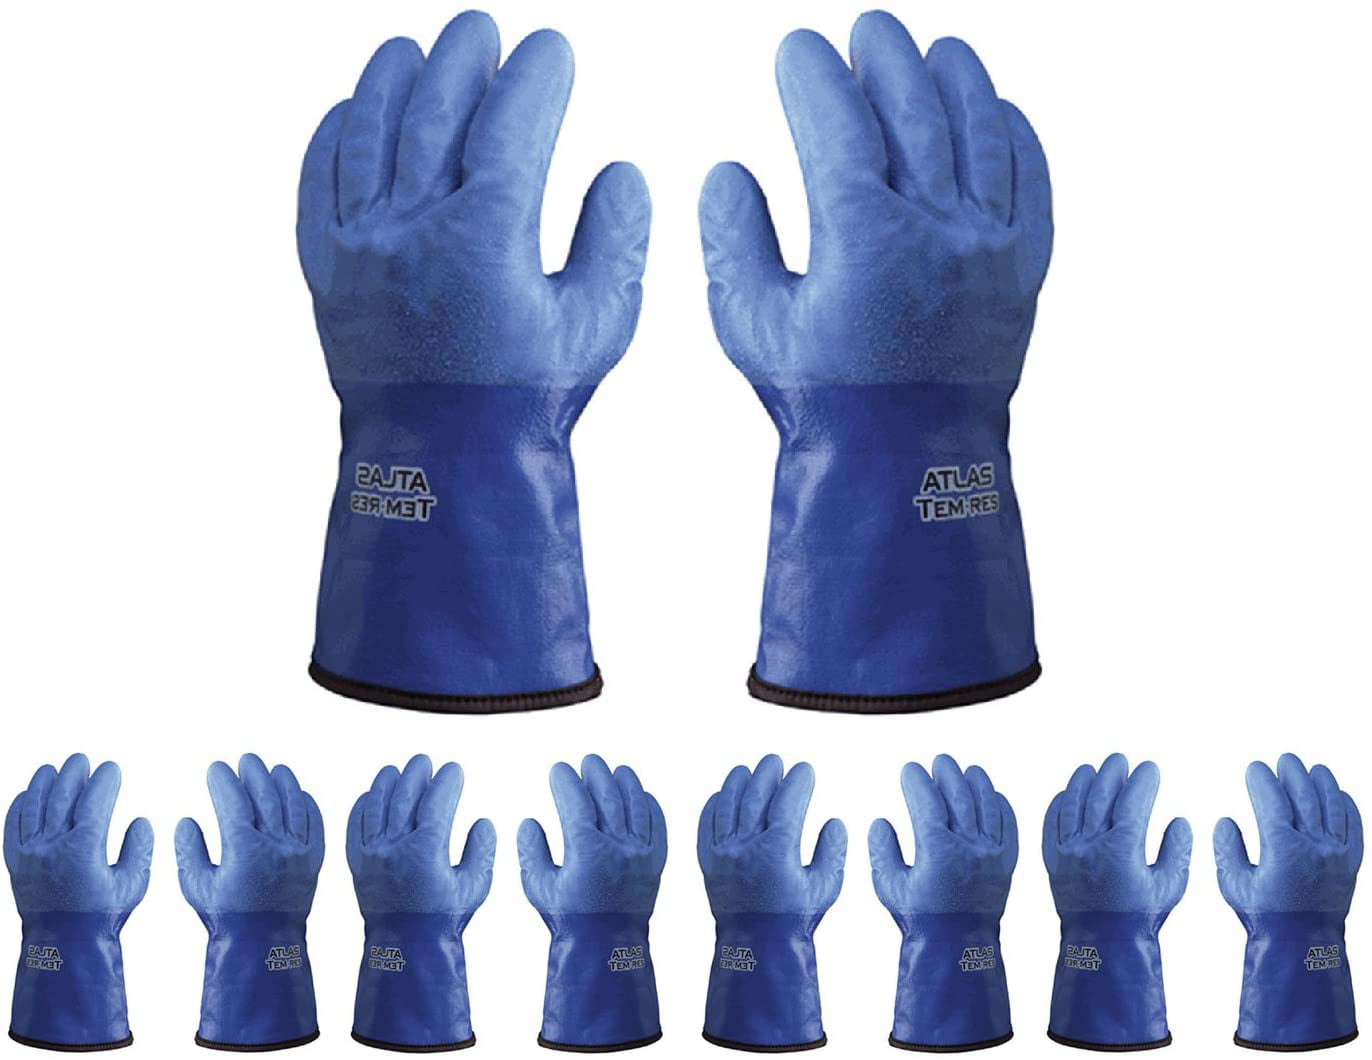 Atlas ATL282 TemRes Textured Polyurethane Large General Work Gloves,  12-Pairs 